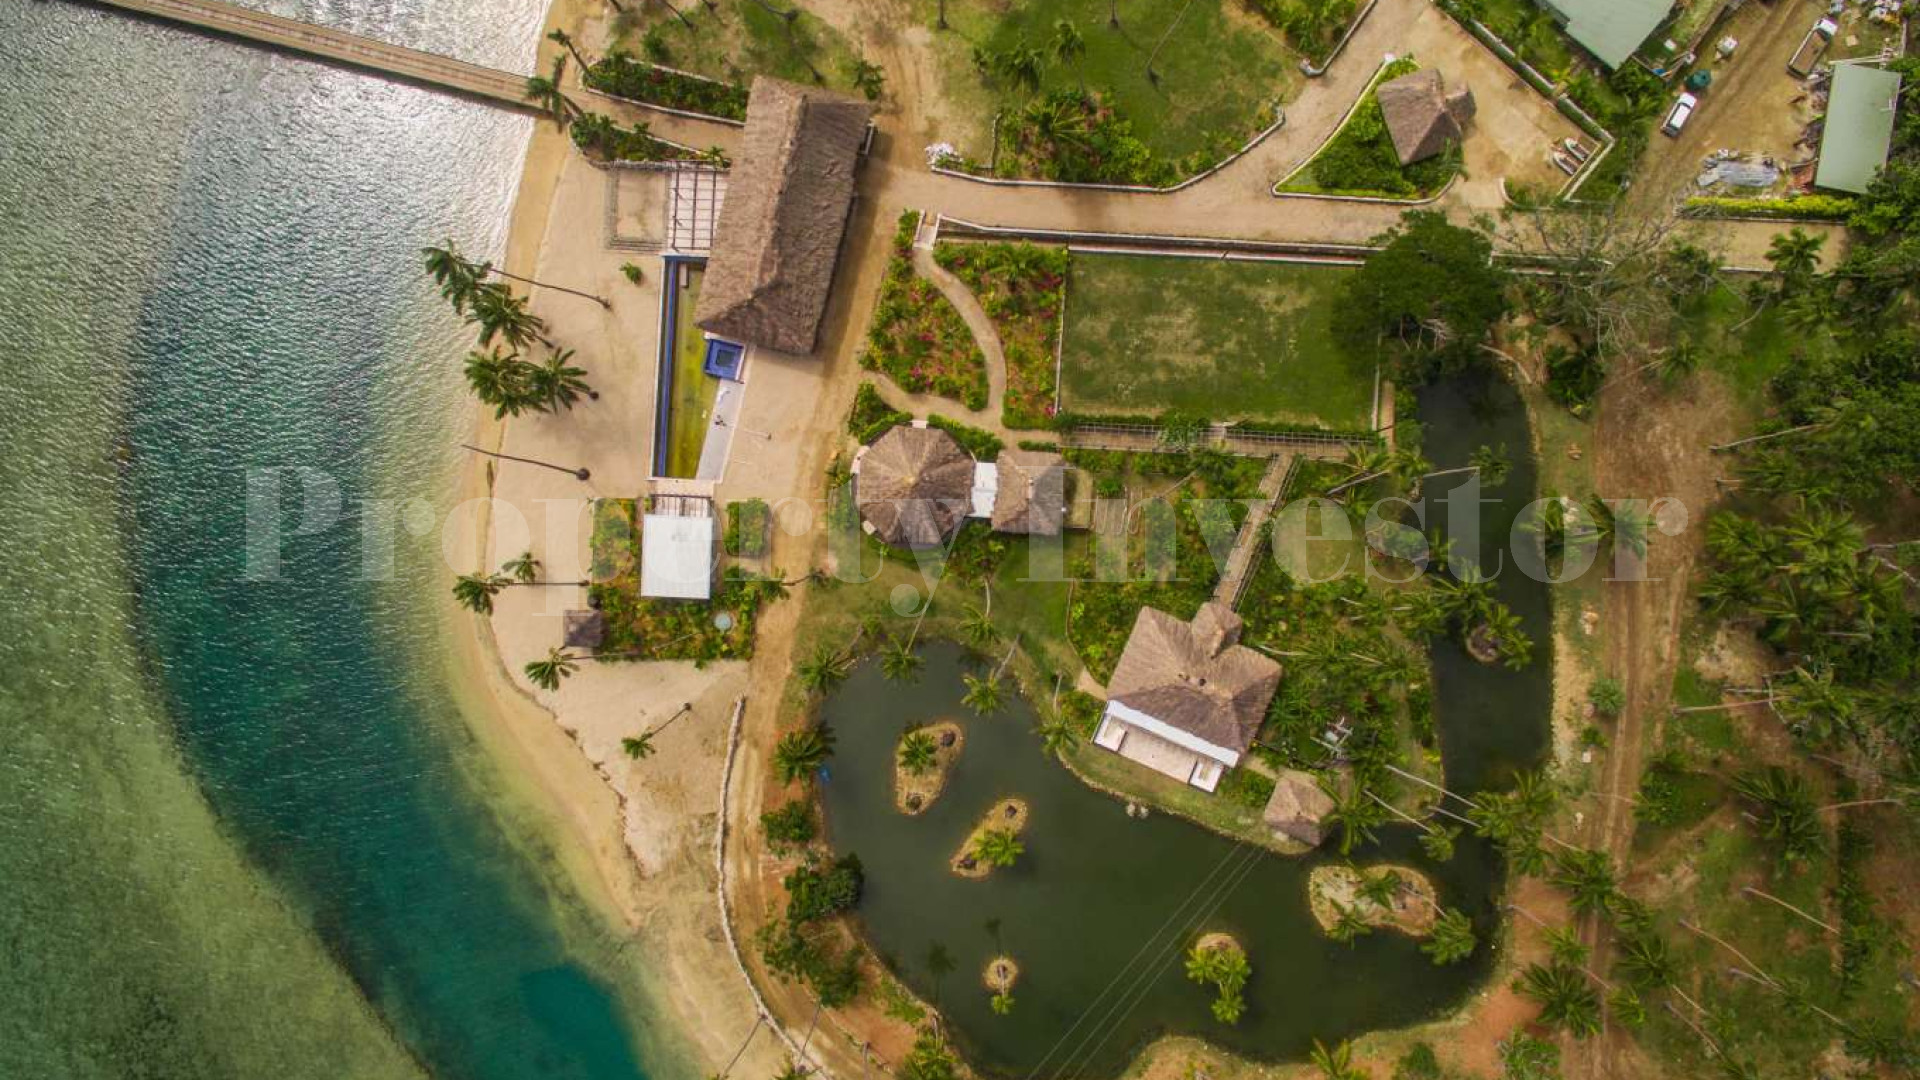 Земля в собственность на острове Фиджи (участок 7)